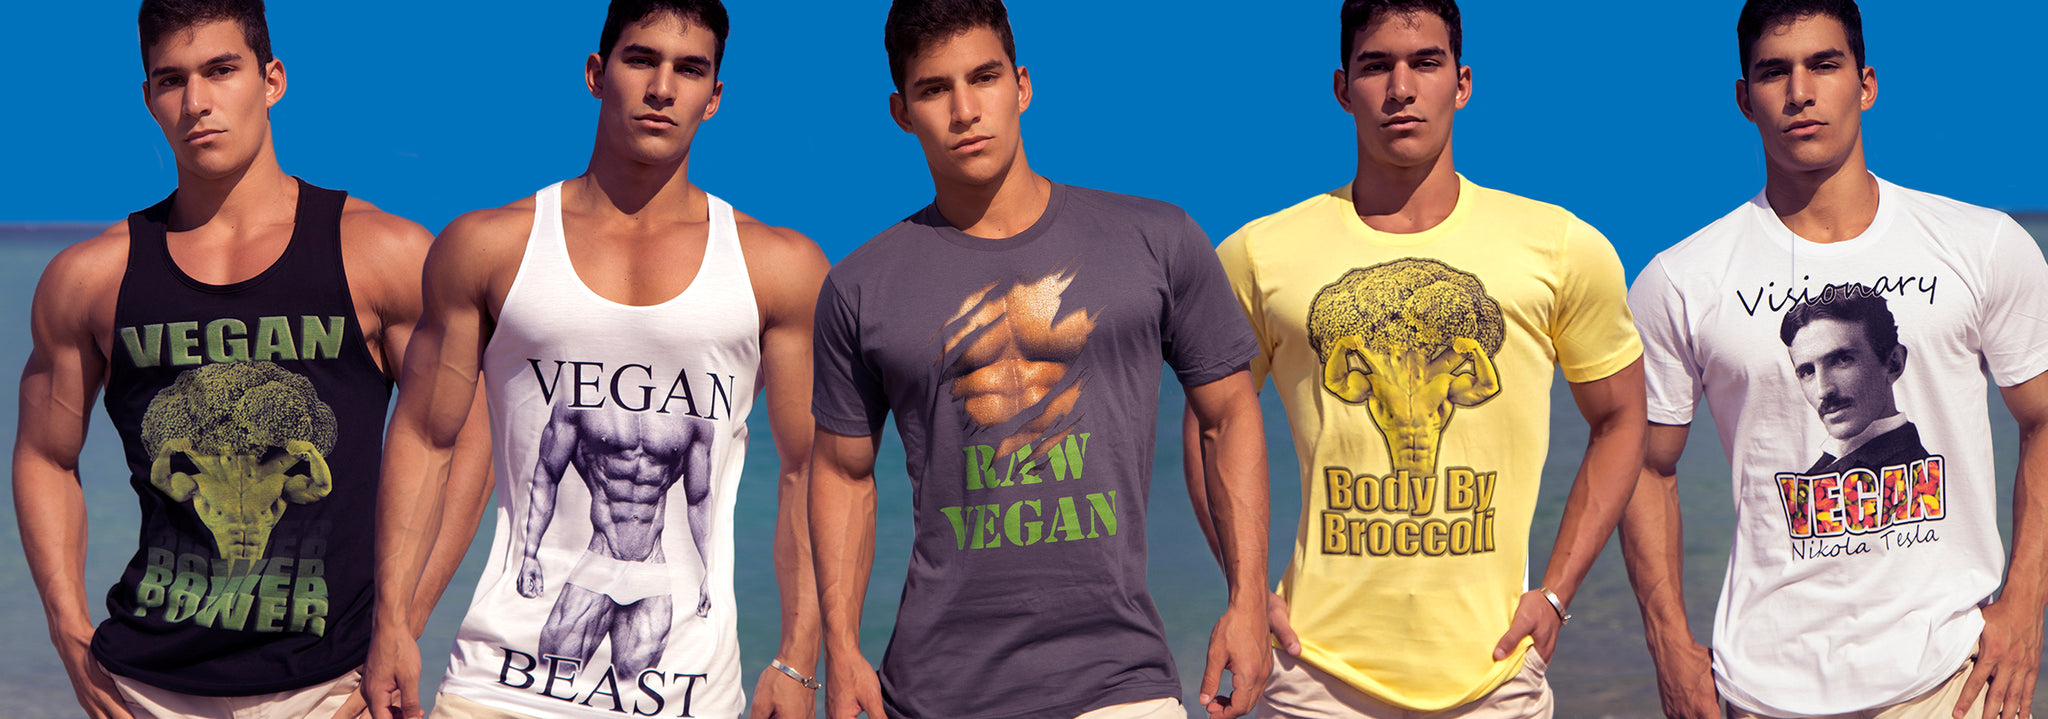 Vegan men's wear, tank top, t-shirts, tee shirts, woman, man, men athletic wear,  vegan, raw vegan, organic clothing